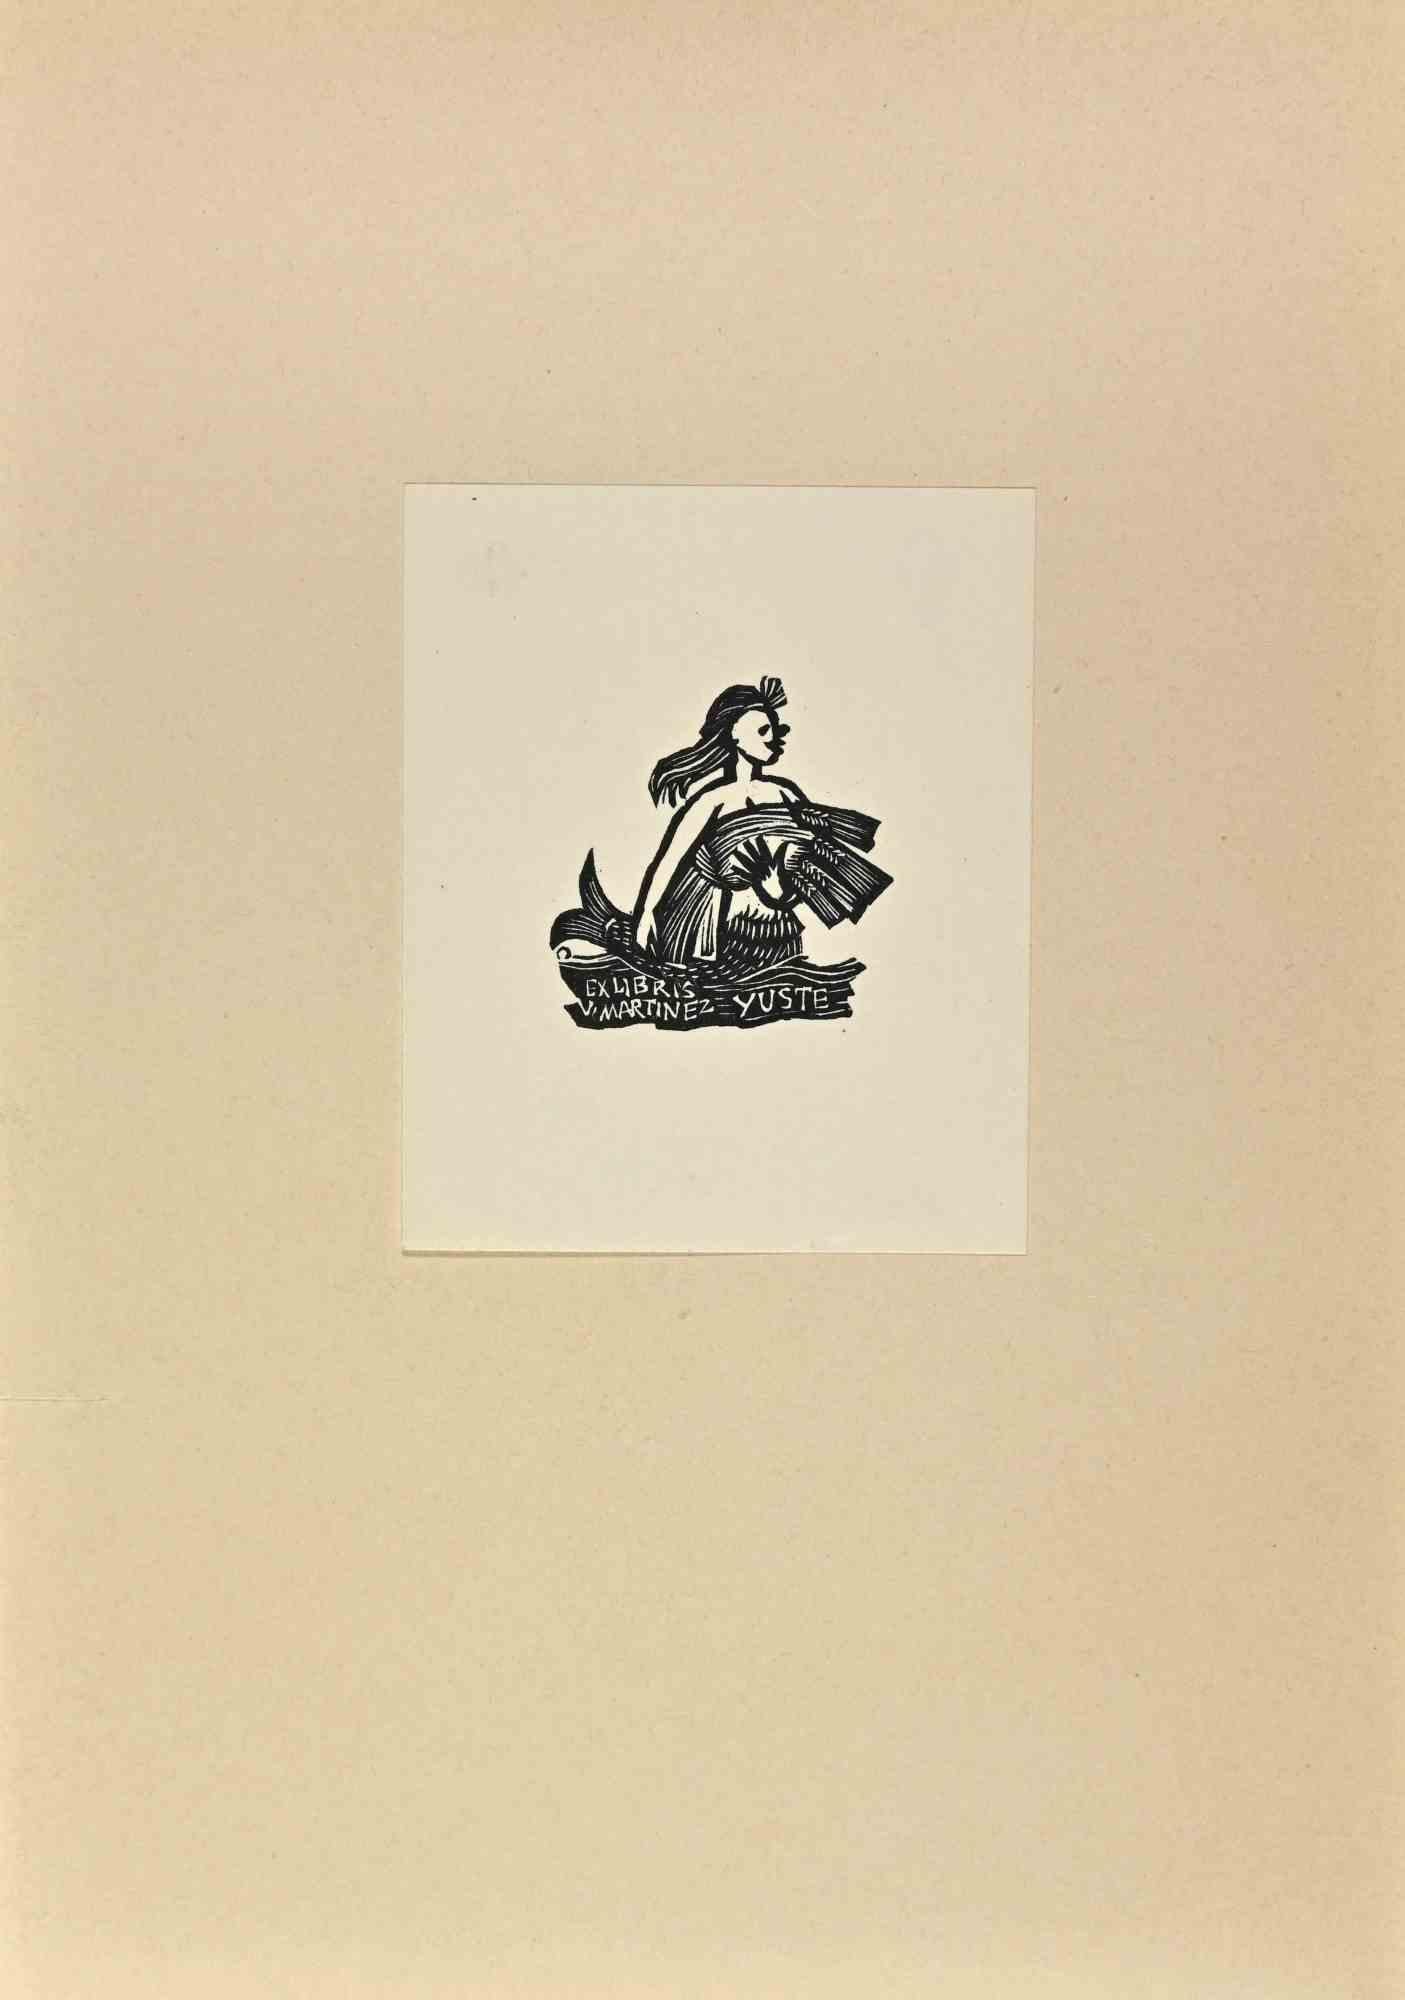   Ex Libris, V. Martinez Yuste, gravure sur bois, milieu du 20e siècle - Art de Unknown